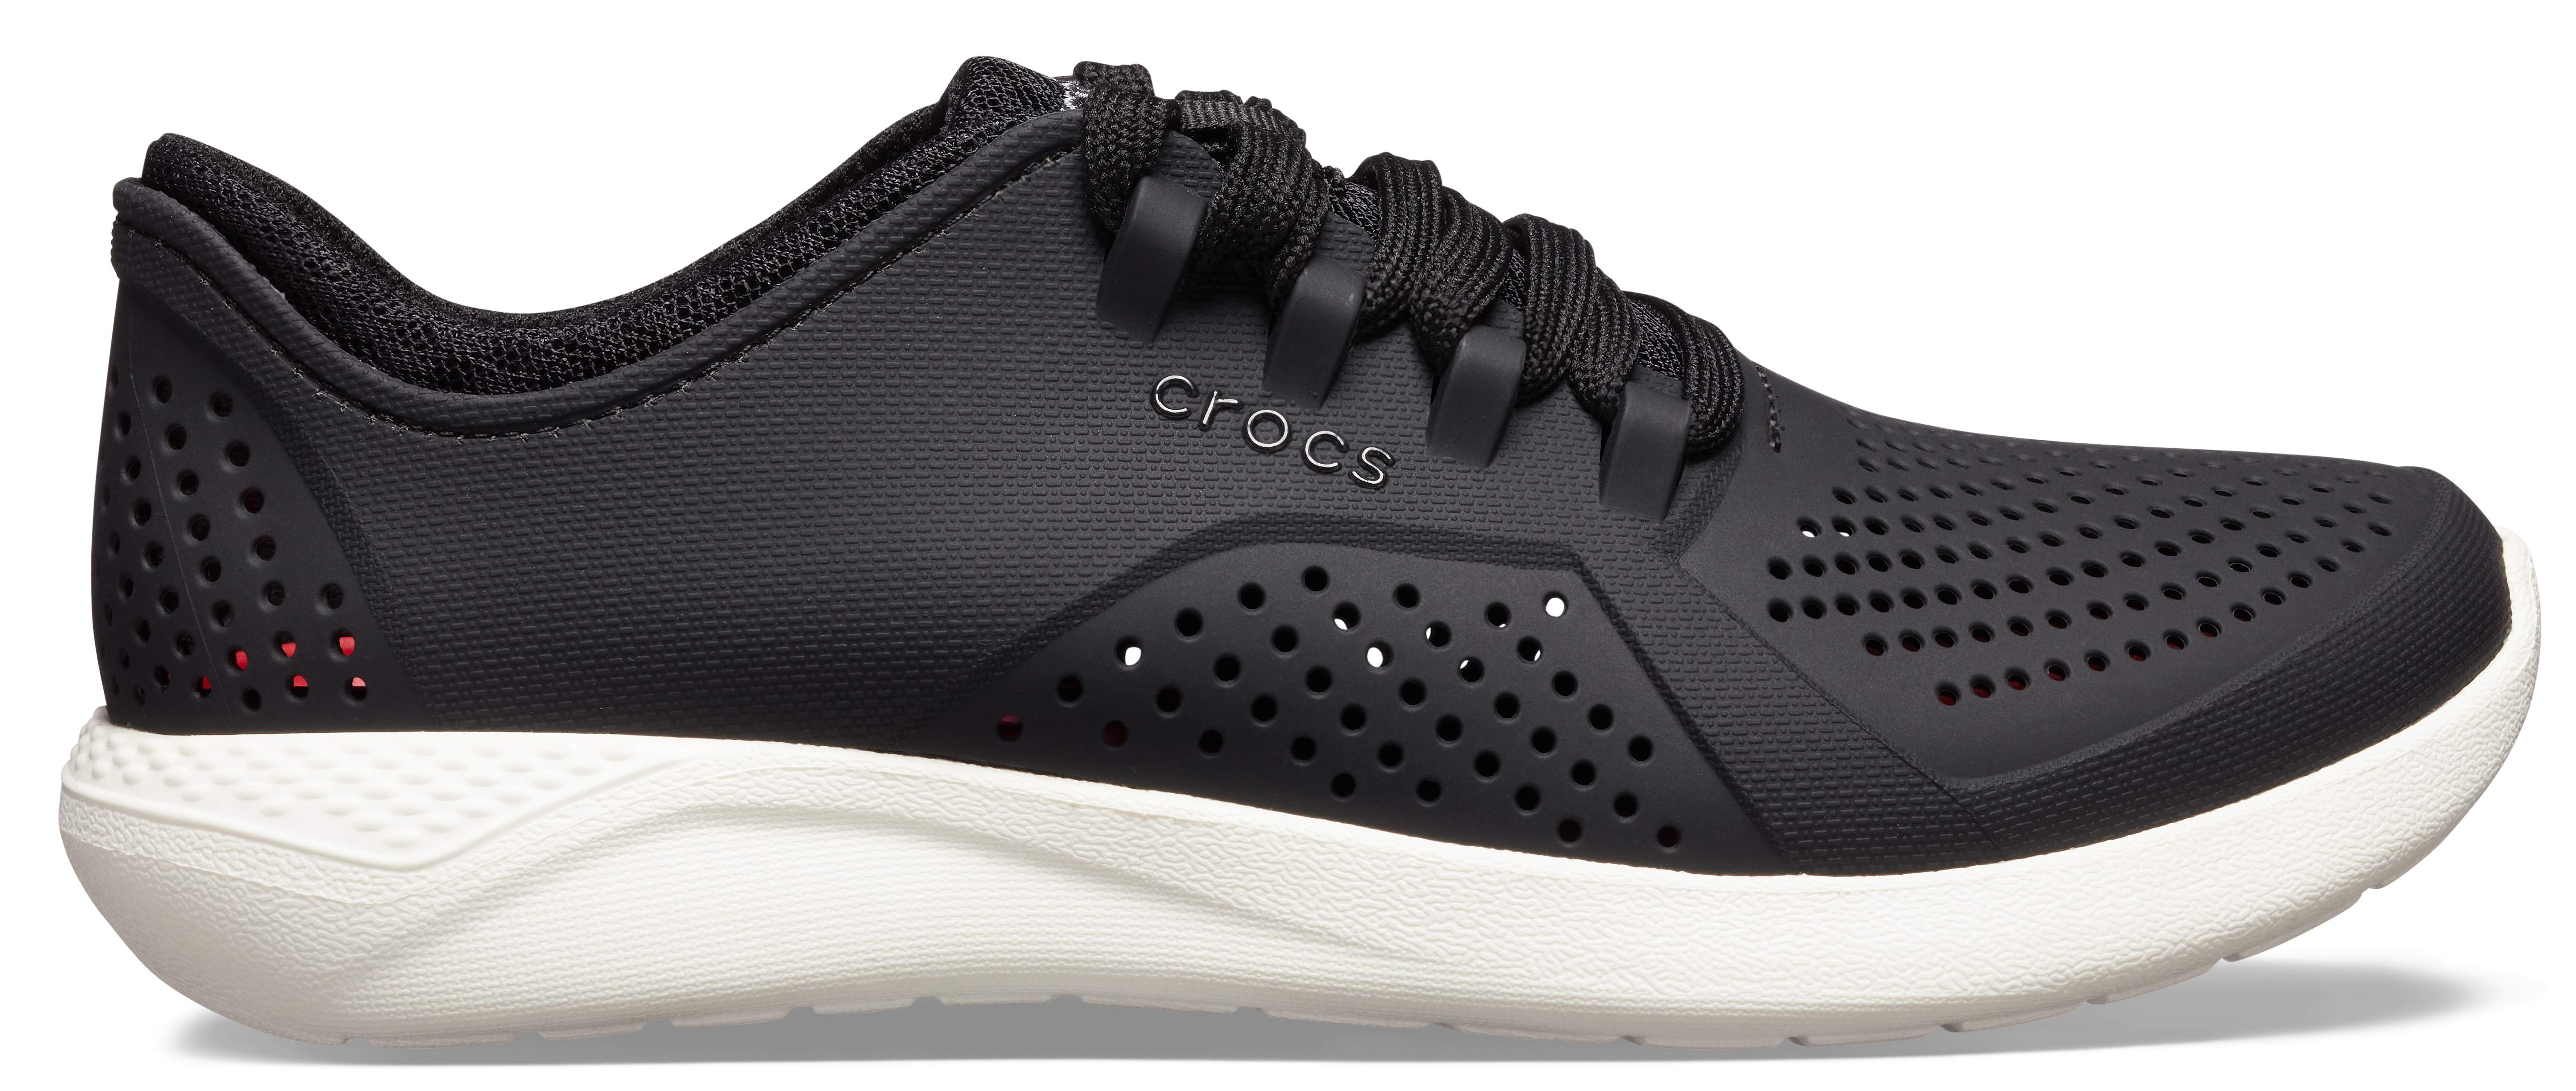 croc tennis shoes